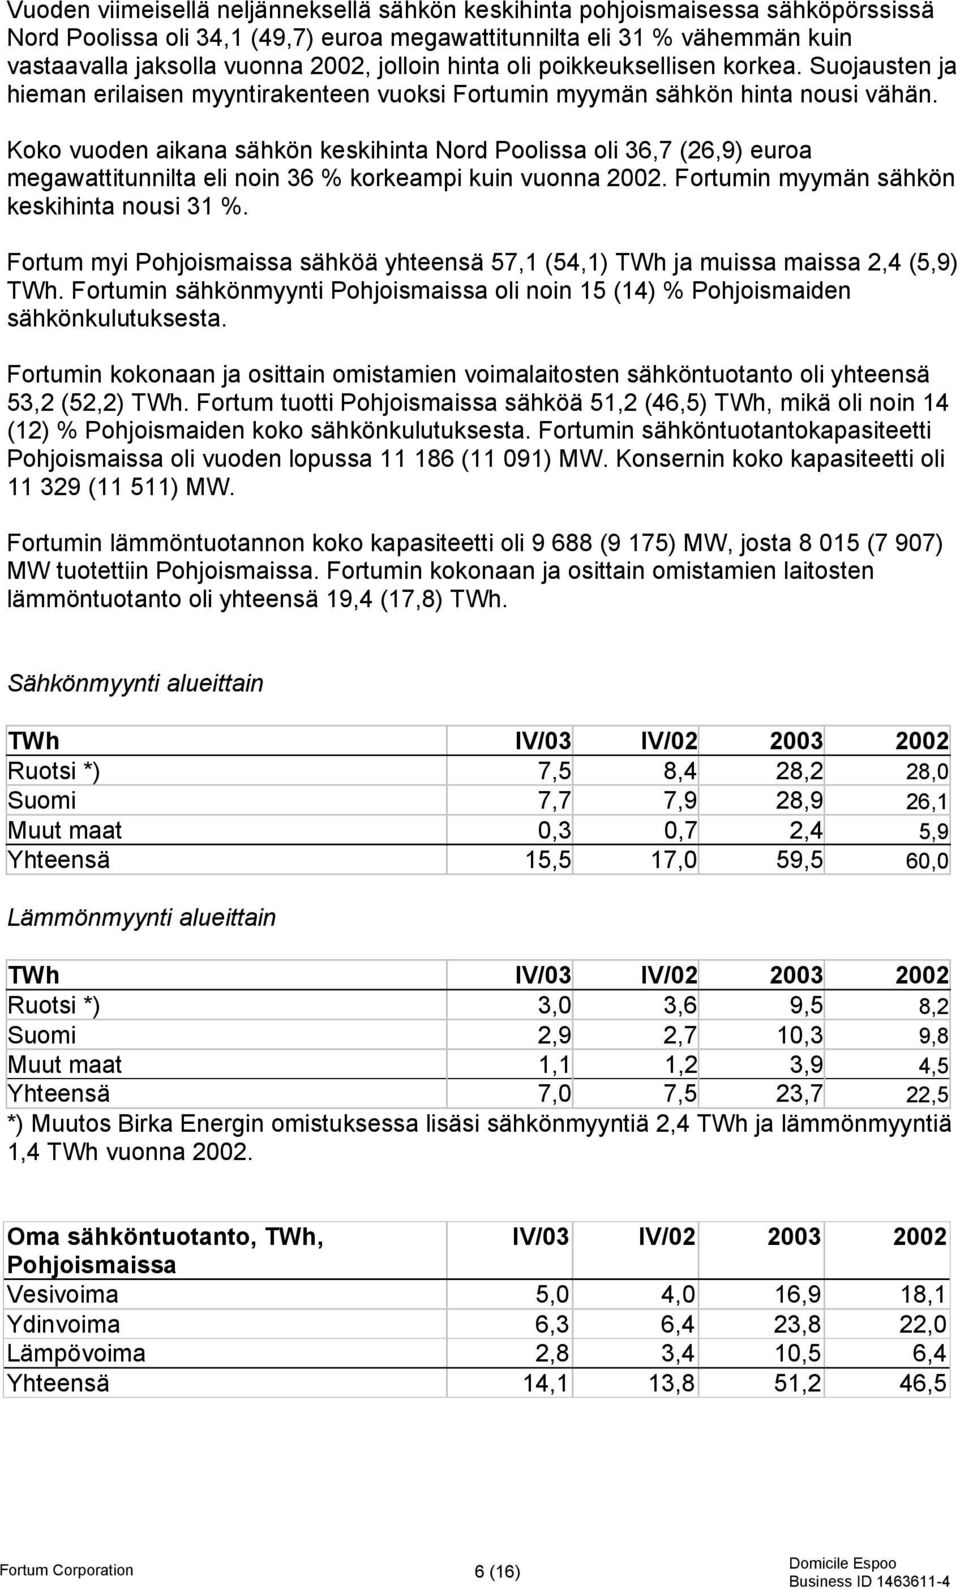 Koko vuoden aikana sähkön keskihinta Nord Poolissa oli 36,7 (26,9) euroa megawattitunnilta eli noin 36 % korkeampi kuin vuonna 2002. Fortumin myymän sähkön keskihinta nousi 31 %.